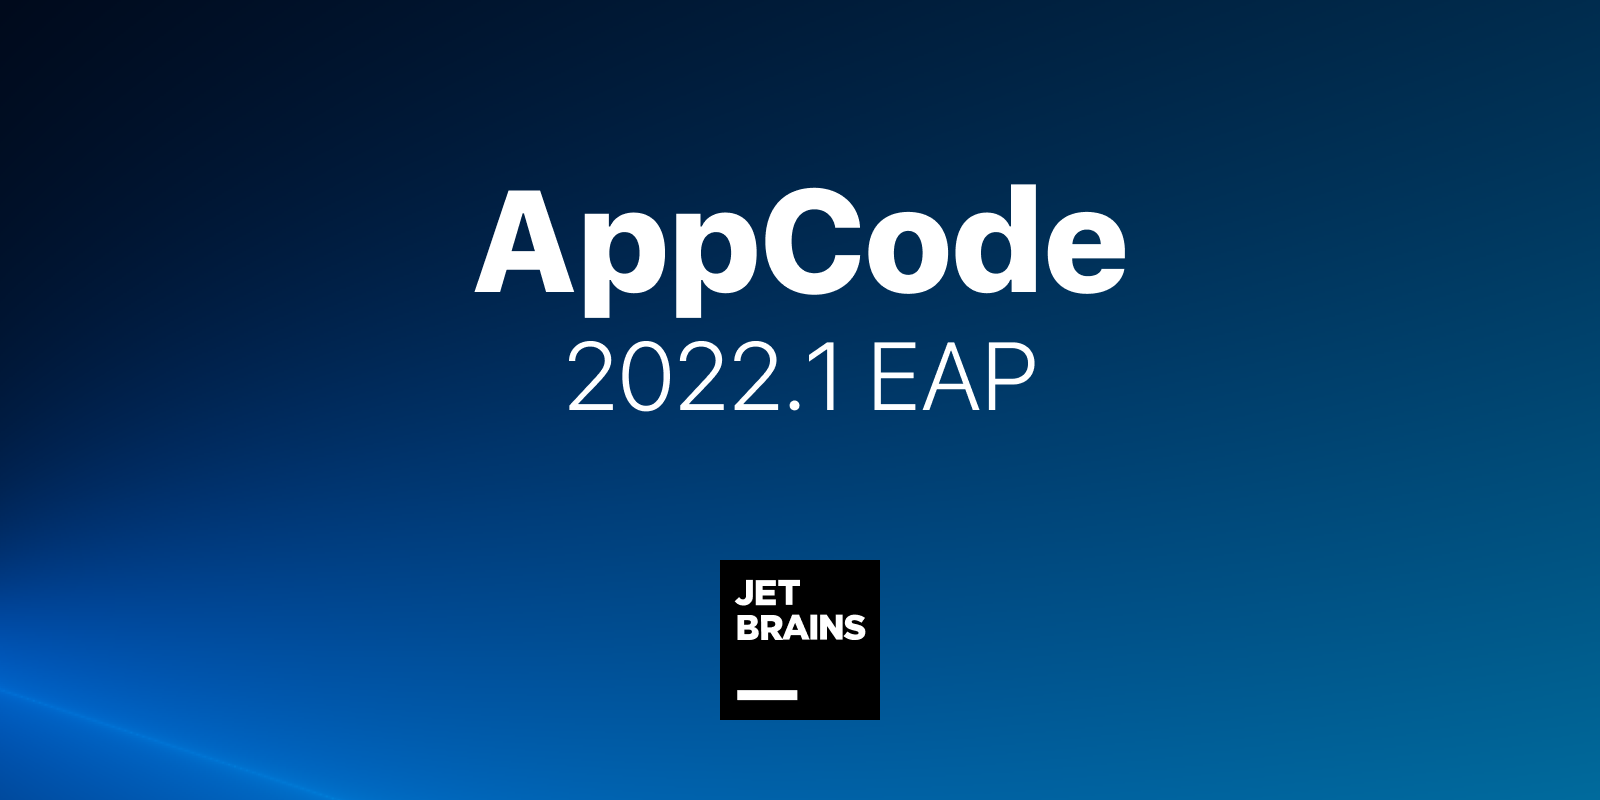 AppCode 2022.1.